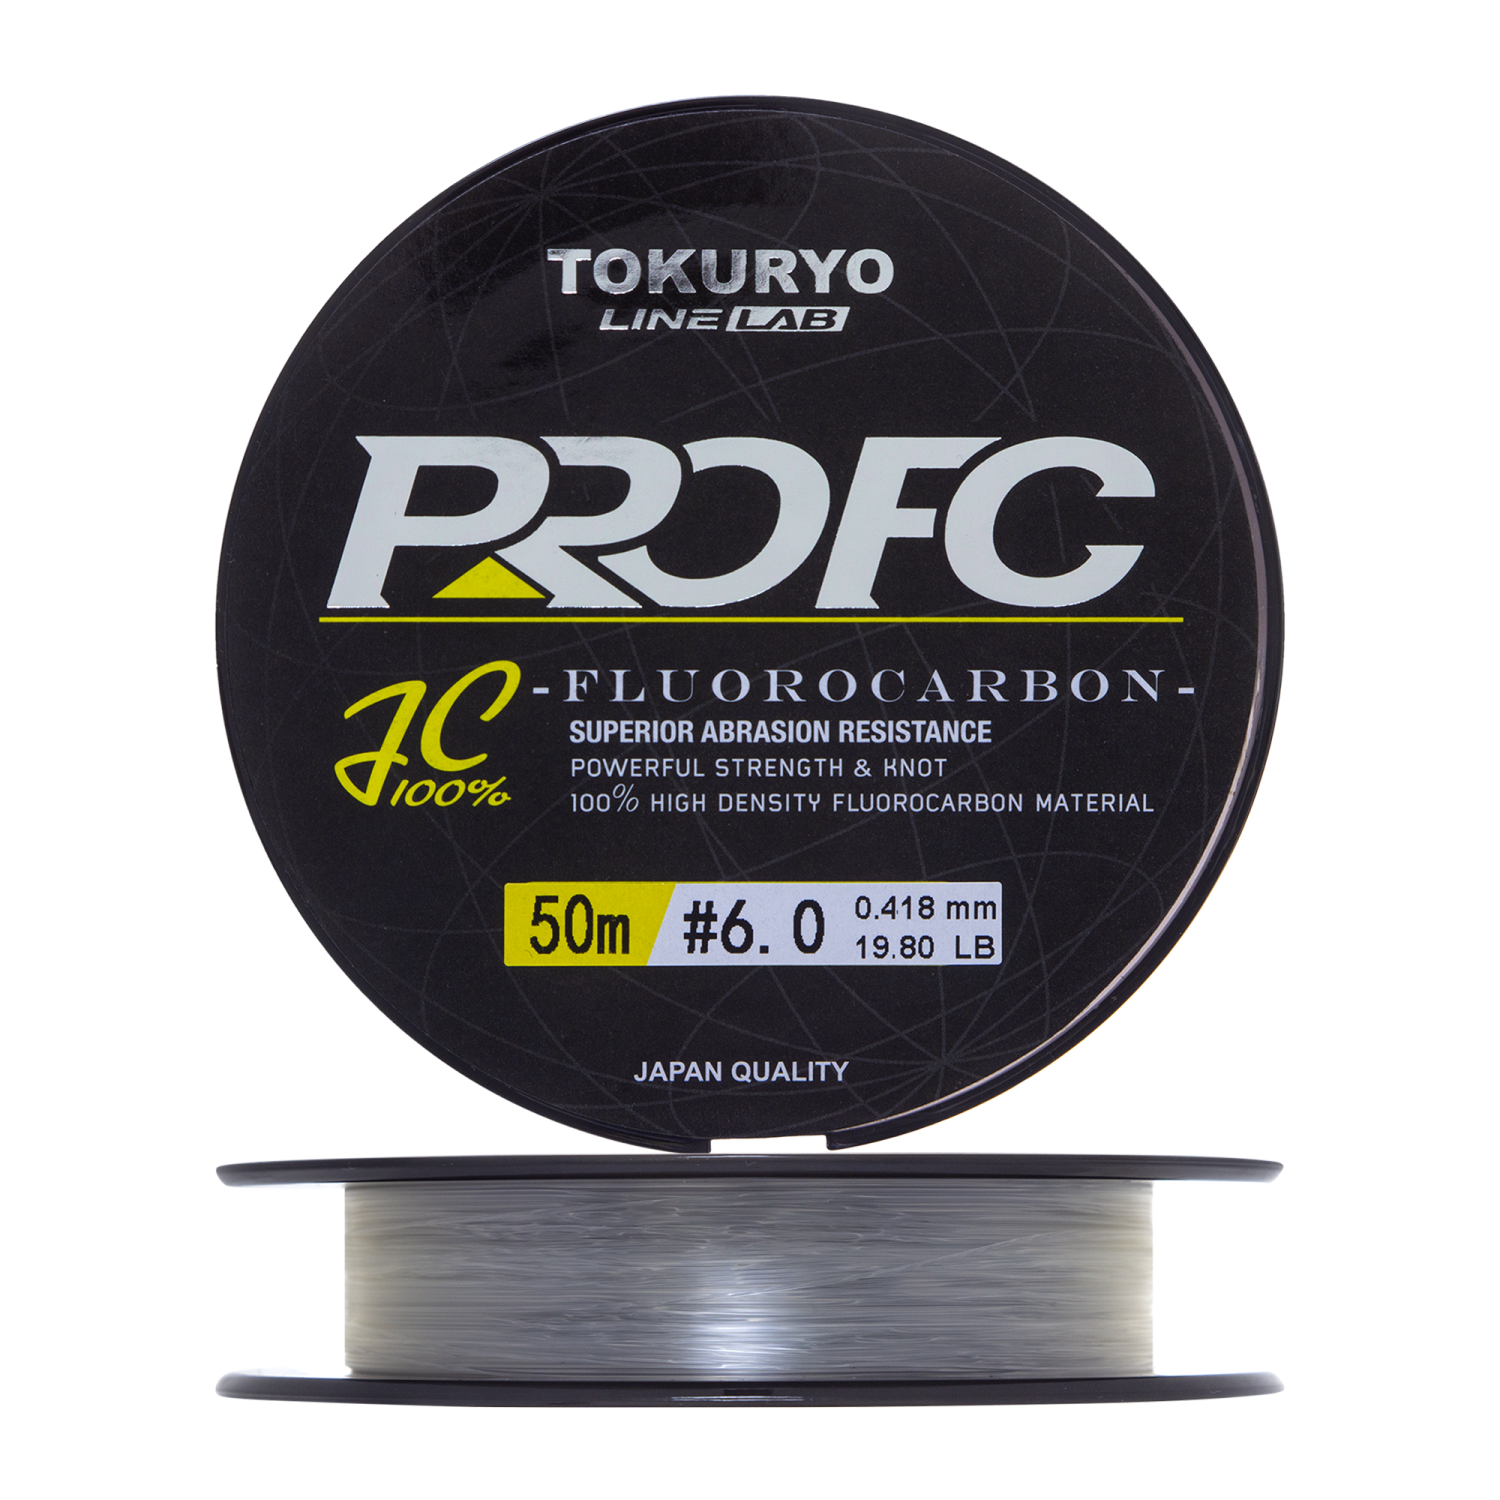 Флюорокарбон Tokuryo Fluorocarbon Pro FC #6 50м (clear)